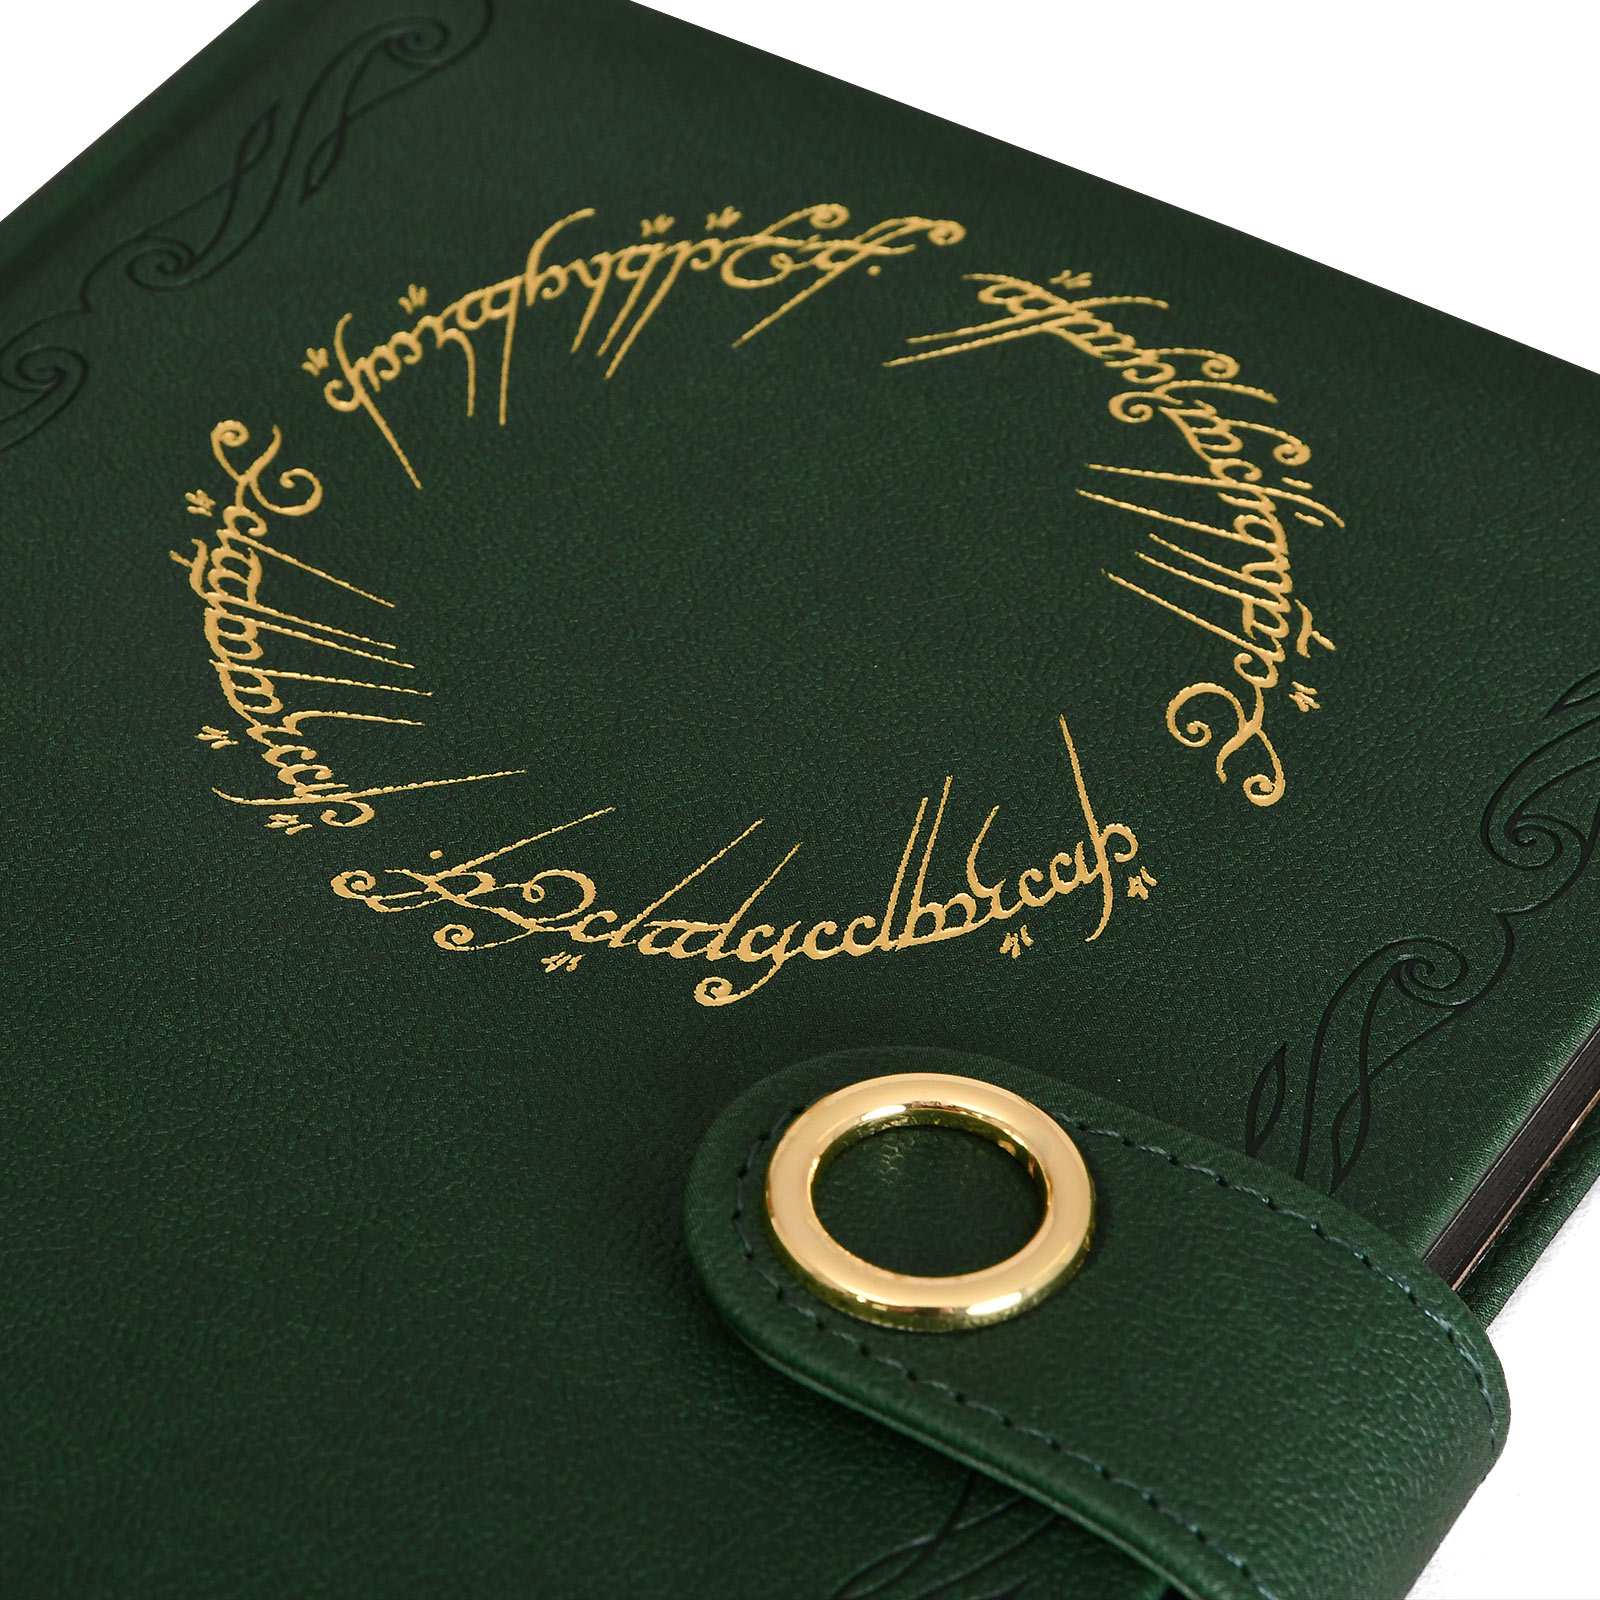 Herr der Ringe - Der Eine Ring Premium Notizbuch A5